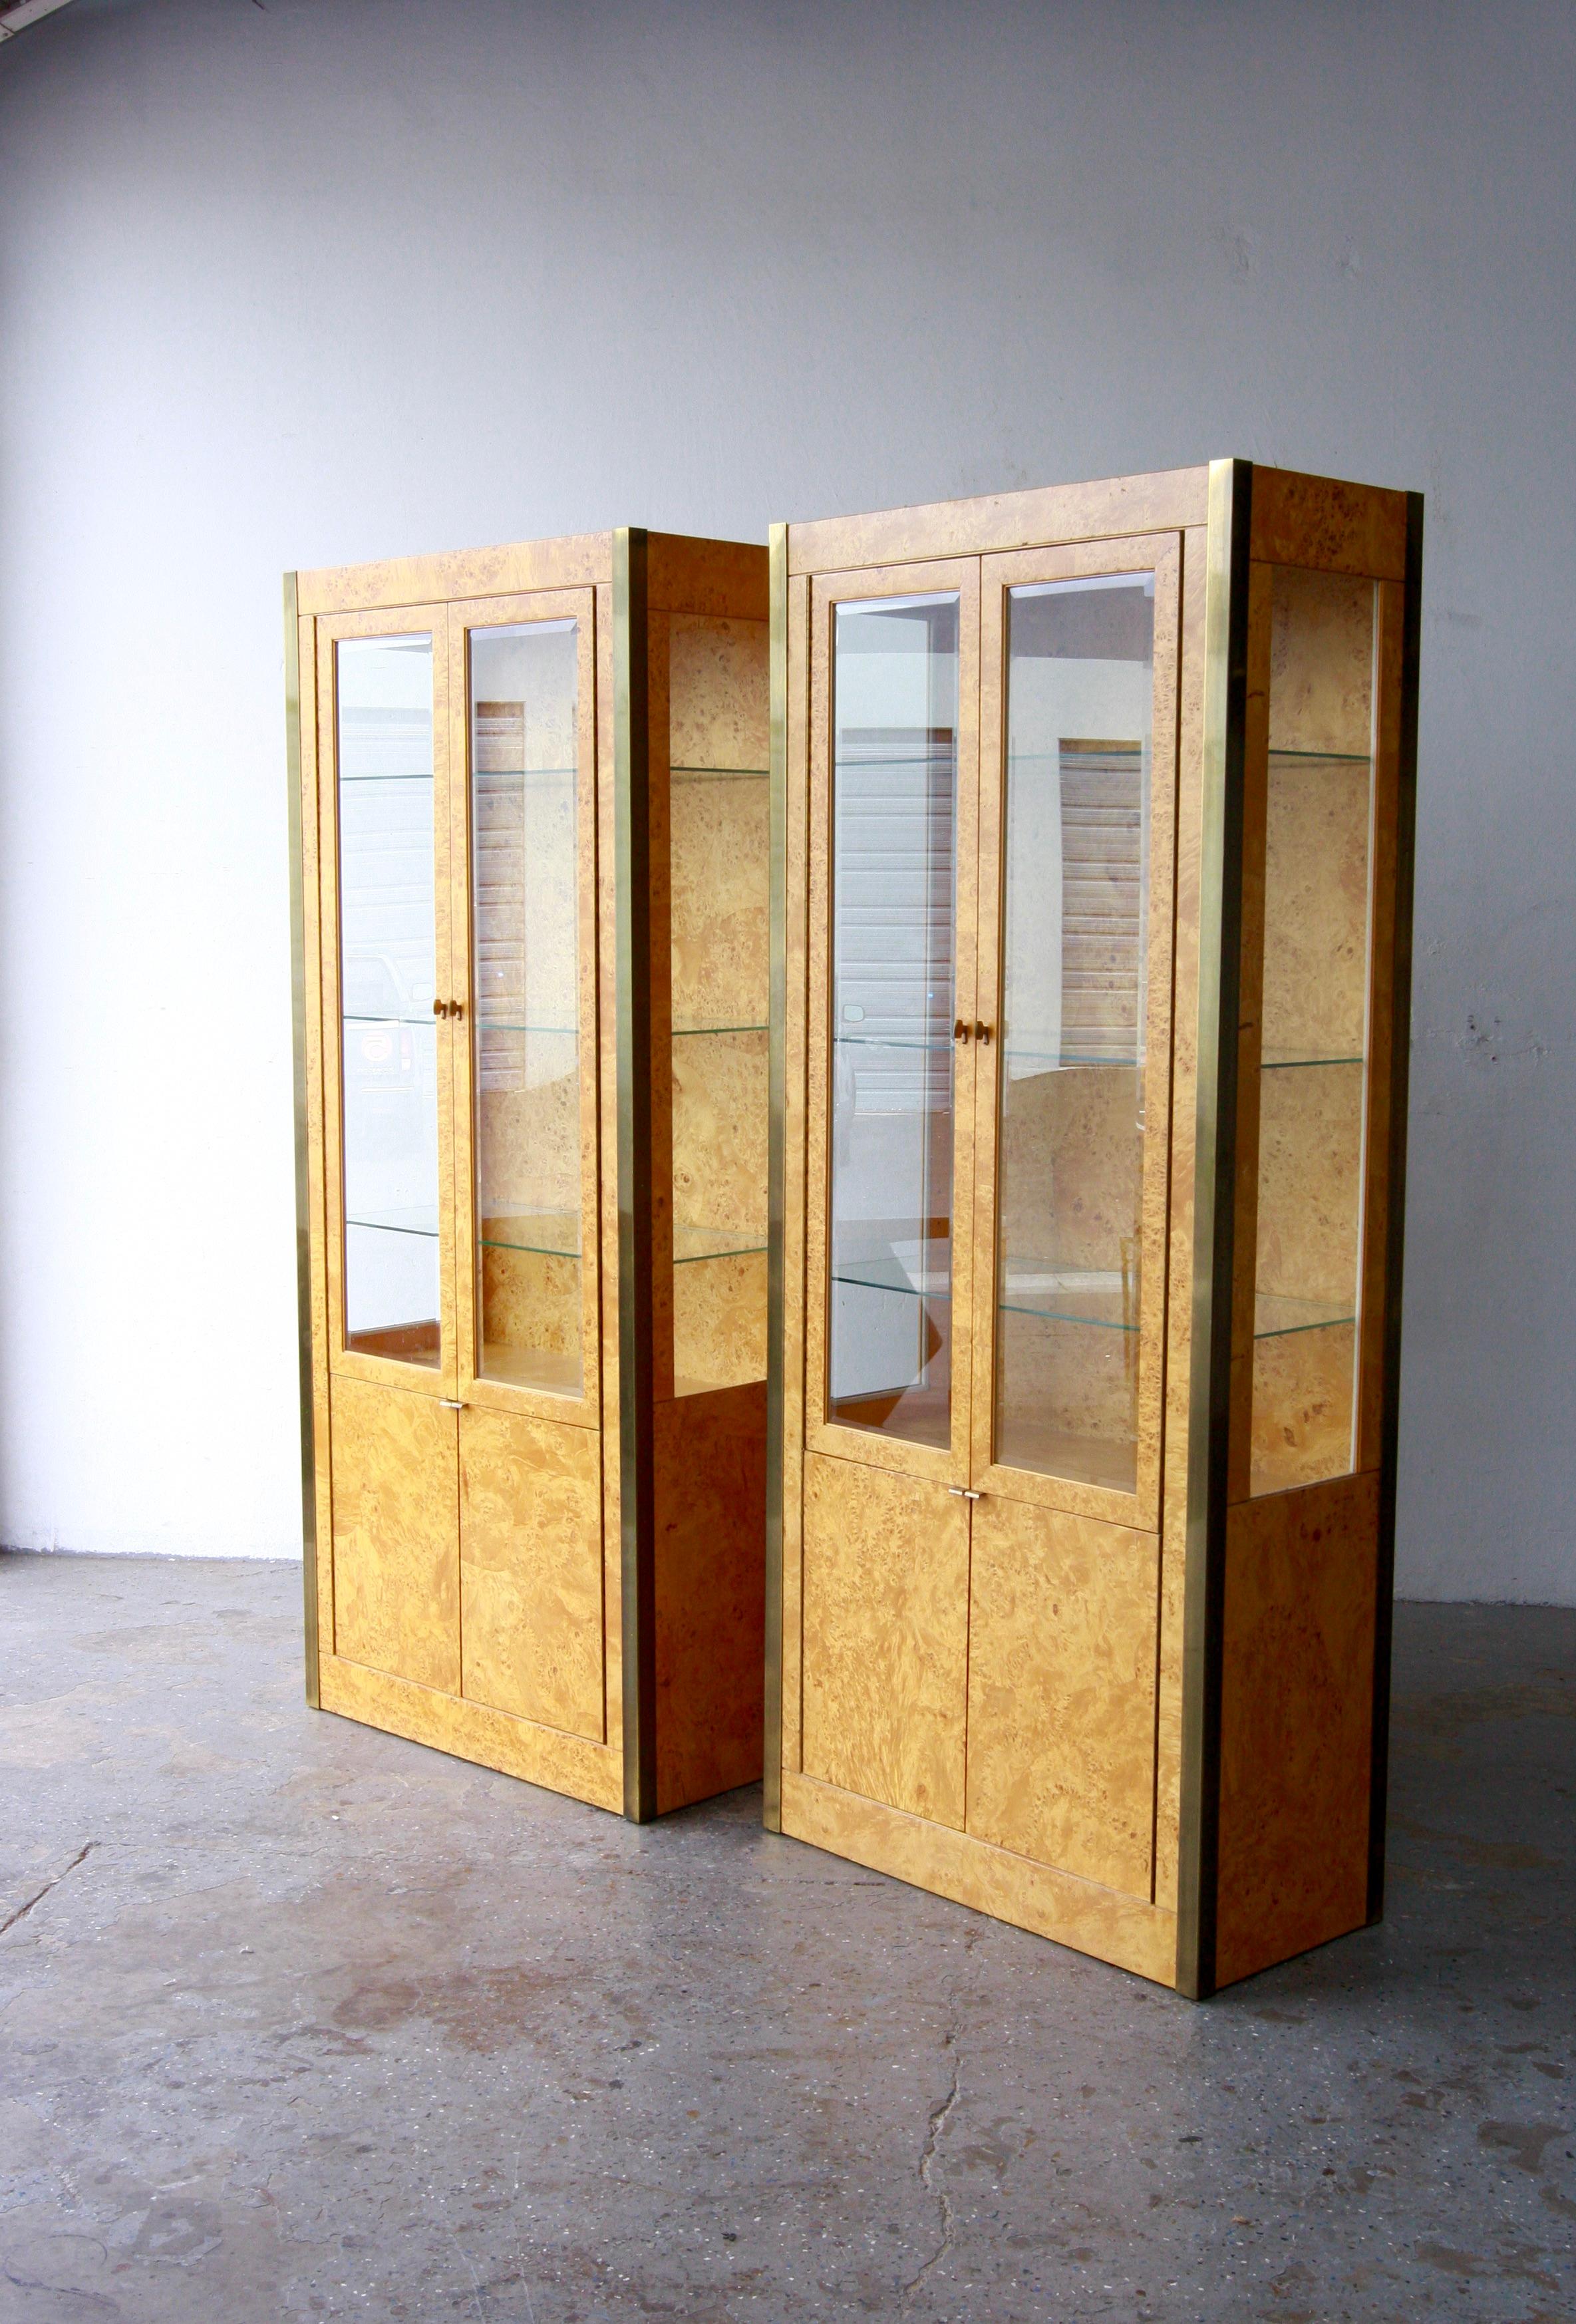 Paire de vitrines en bois de ronce et laiton de Tomlinson 
Exquisité des années 1970  vitrines en ronce et laiton,  d'une qualité exceptionnelle, comportent des portes en verre qui s'ouvrent pour révéler des étagères en verre réglables à